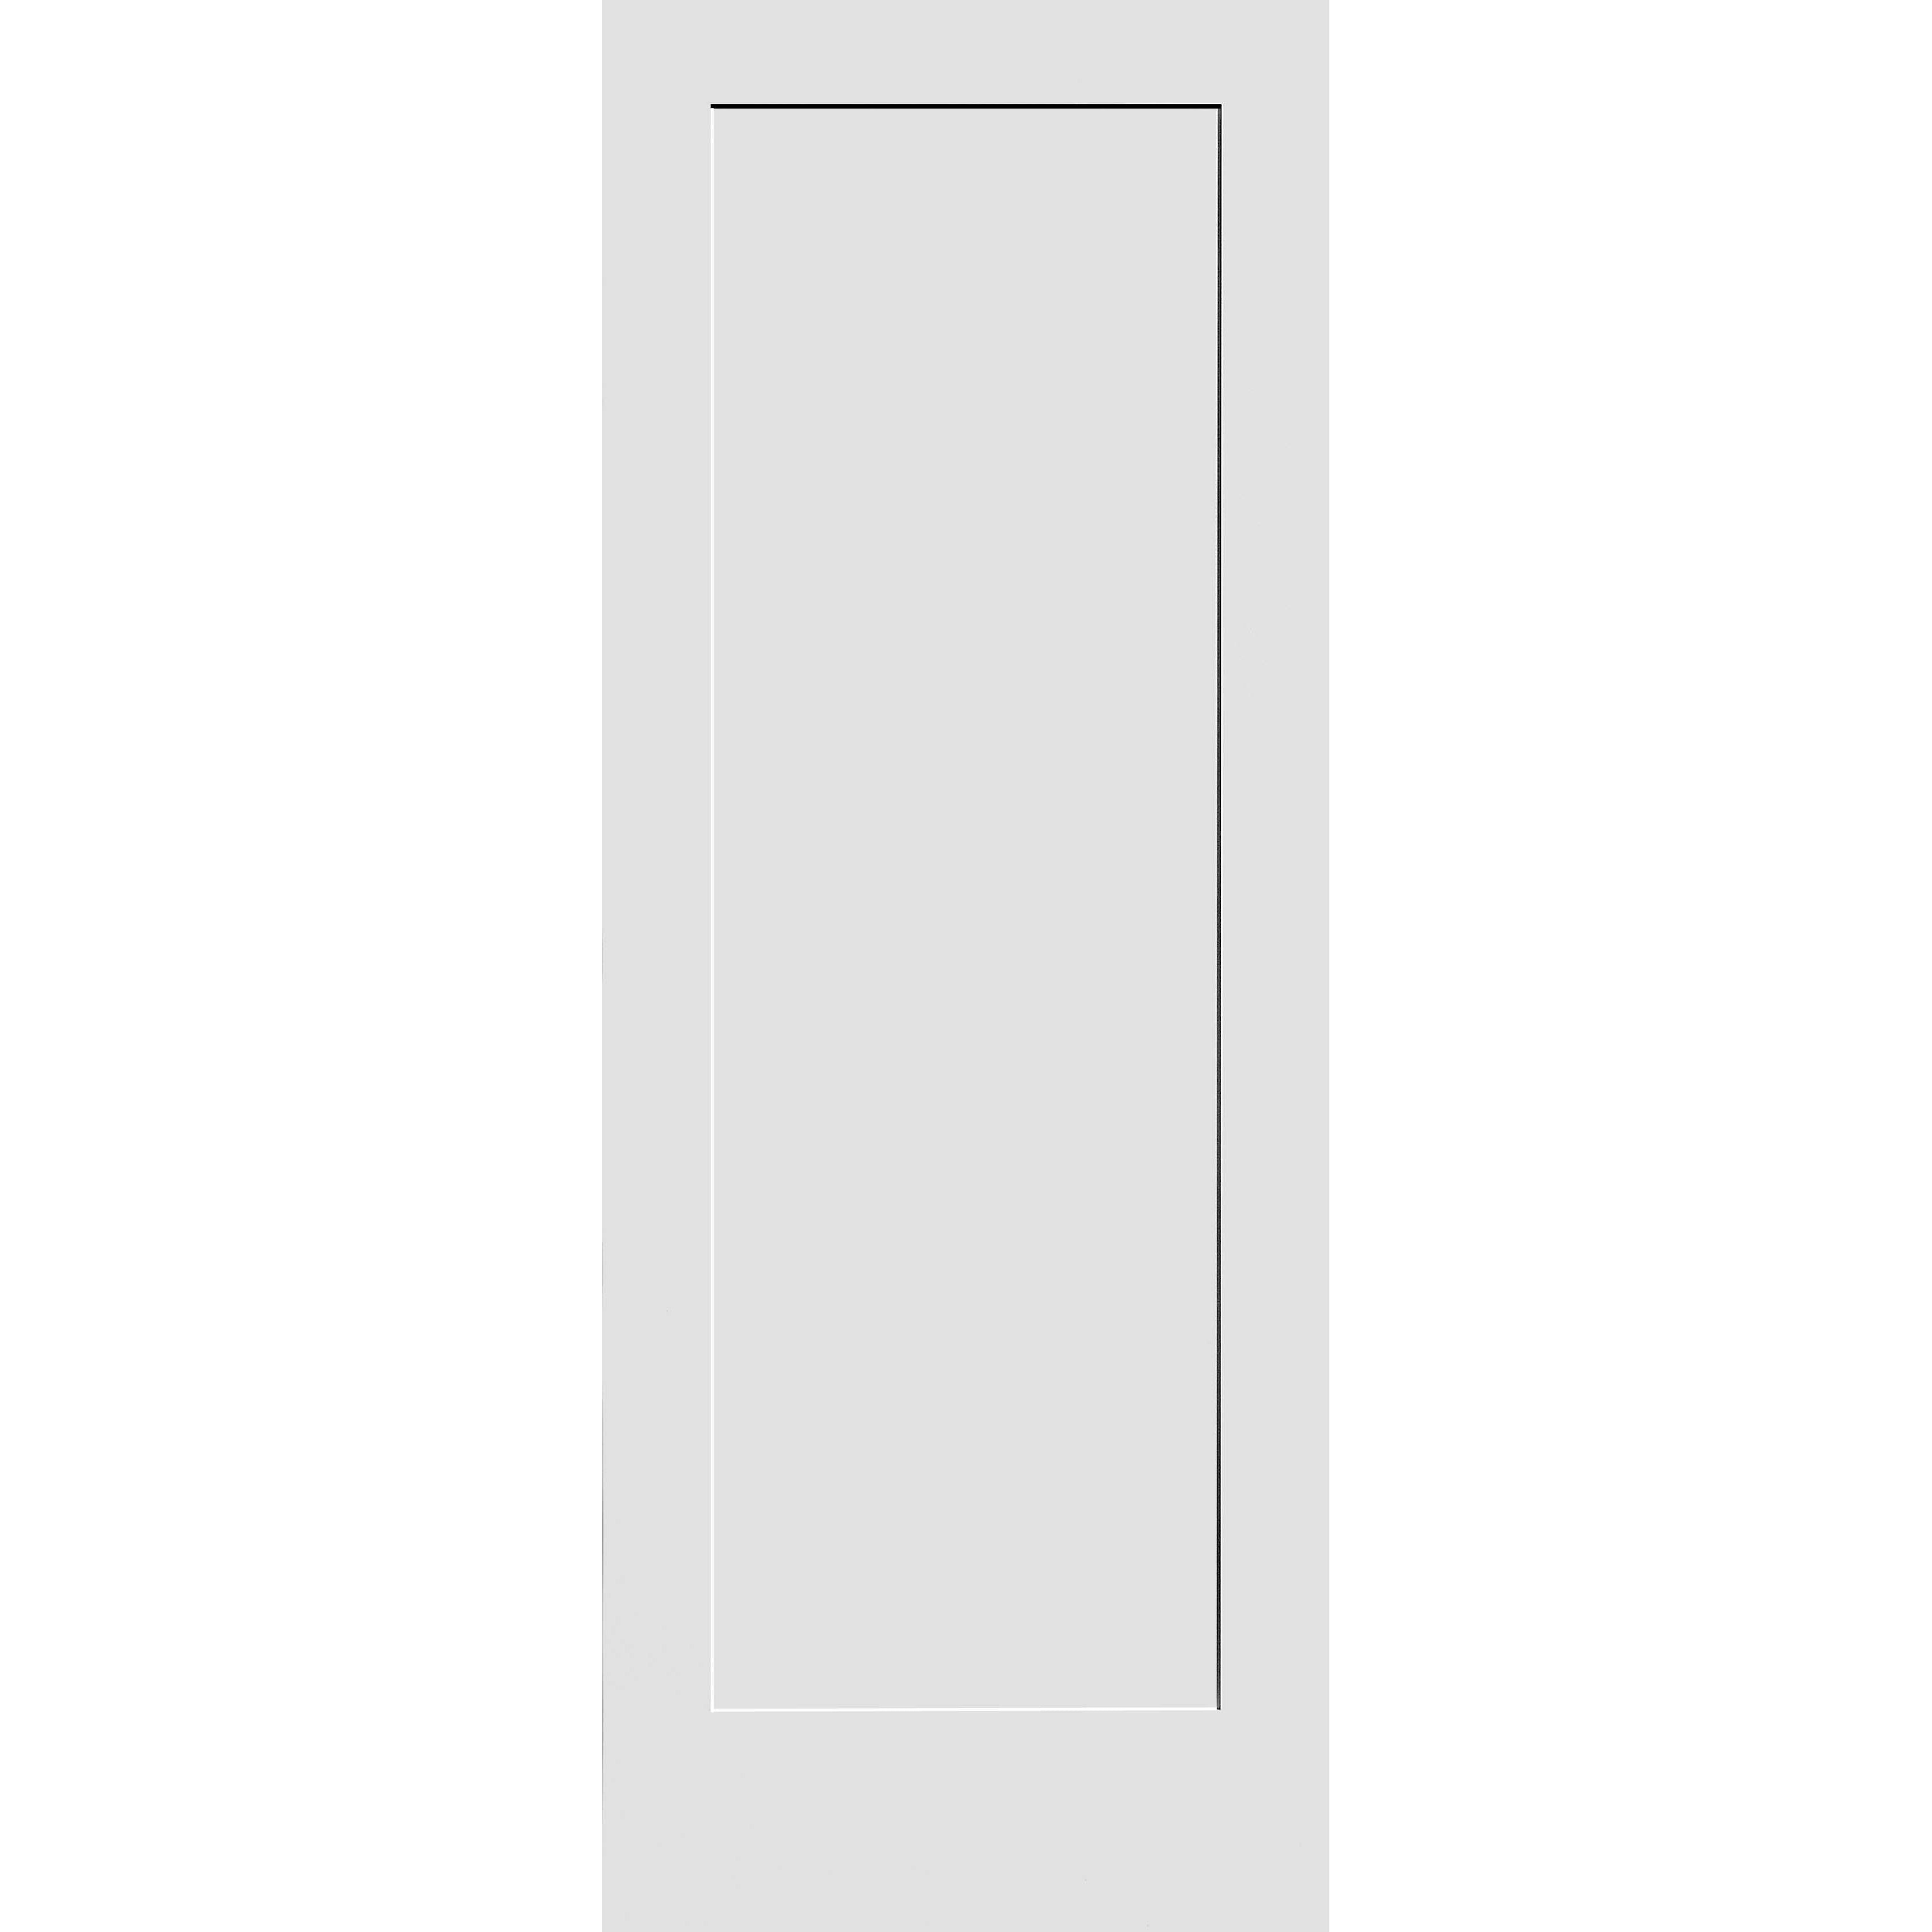 24X80 #8401 MDF PRIMED SHAKER PANEL INTERIOR DOOR